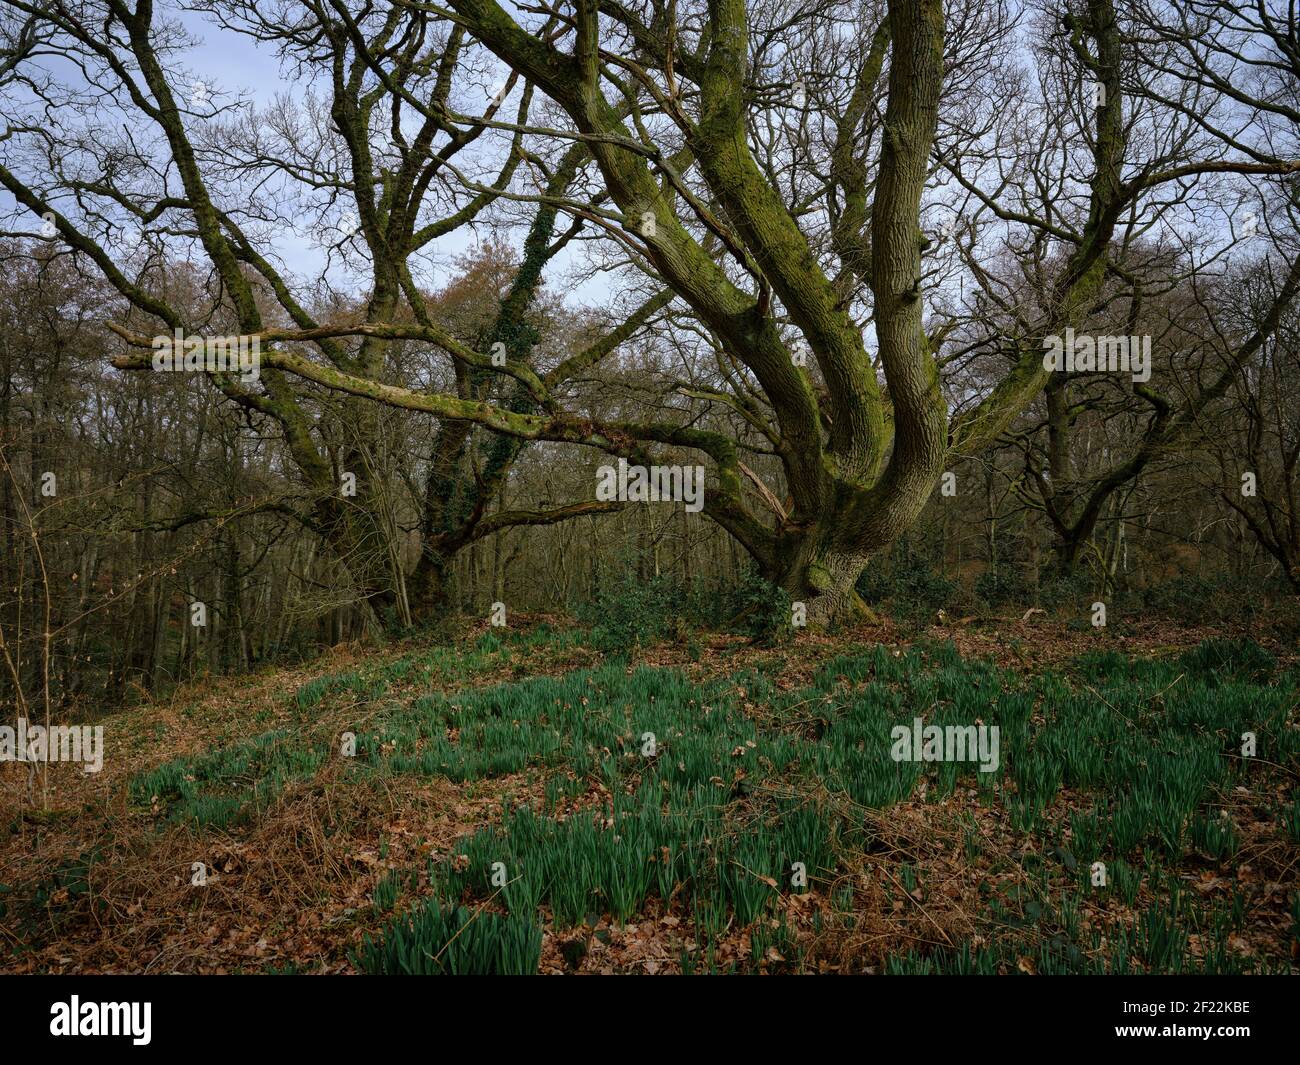 Deux grands arbres entourés de plus petits arbres dans une forêt avec une nouvelle croissance traversant le sol montrant que le printemps a commencé, Greenham Common Banque D'Images